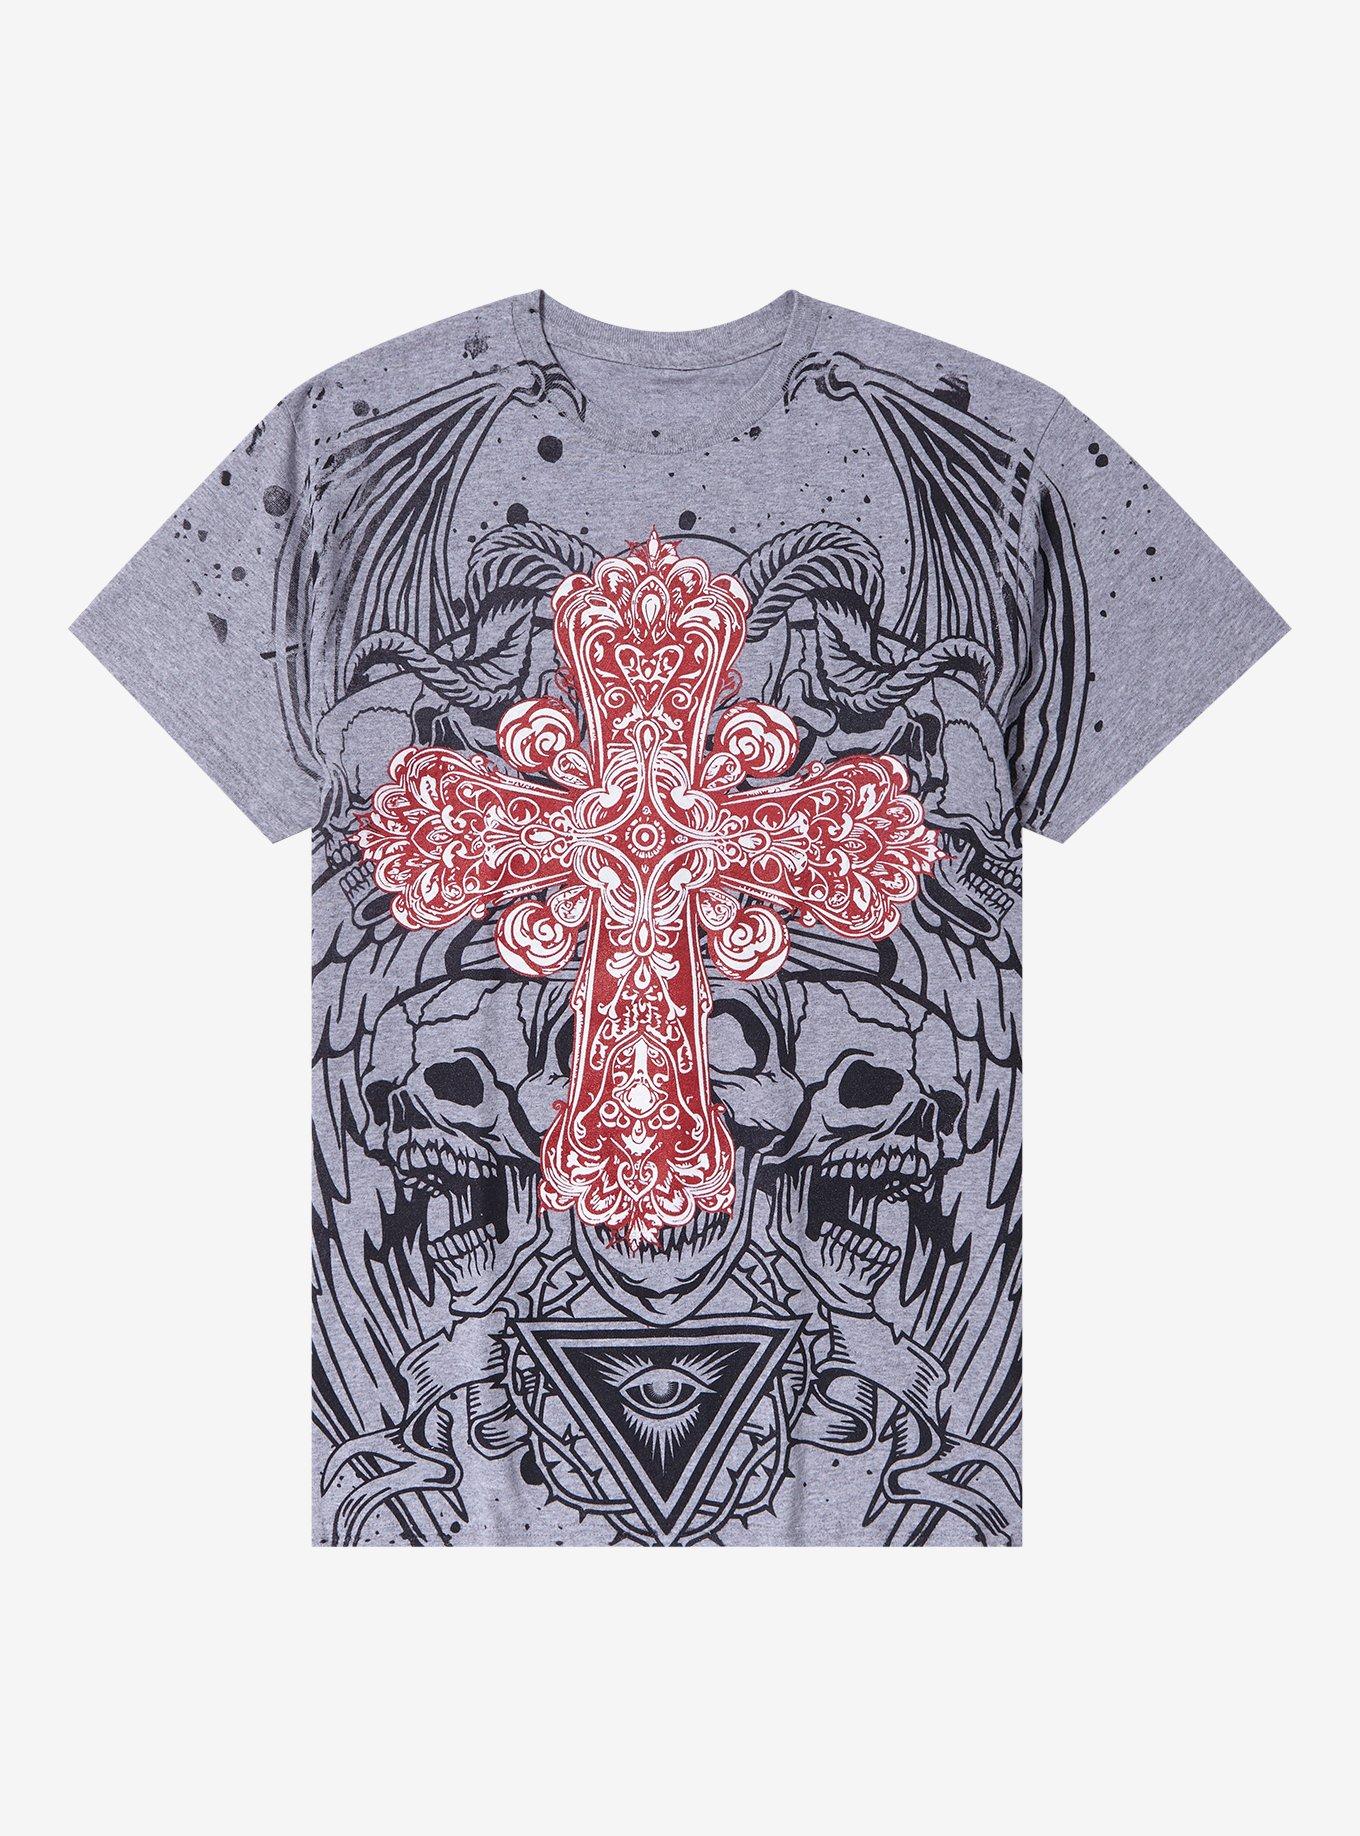 Ornate Cross Skull Demon T-Shirt | Hot Topic